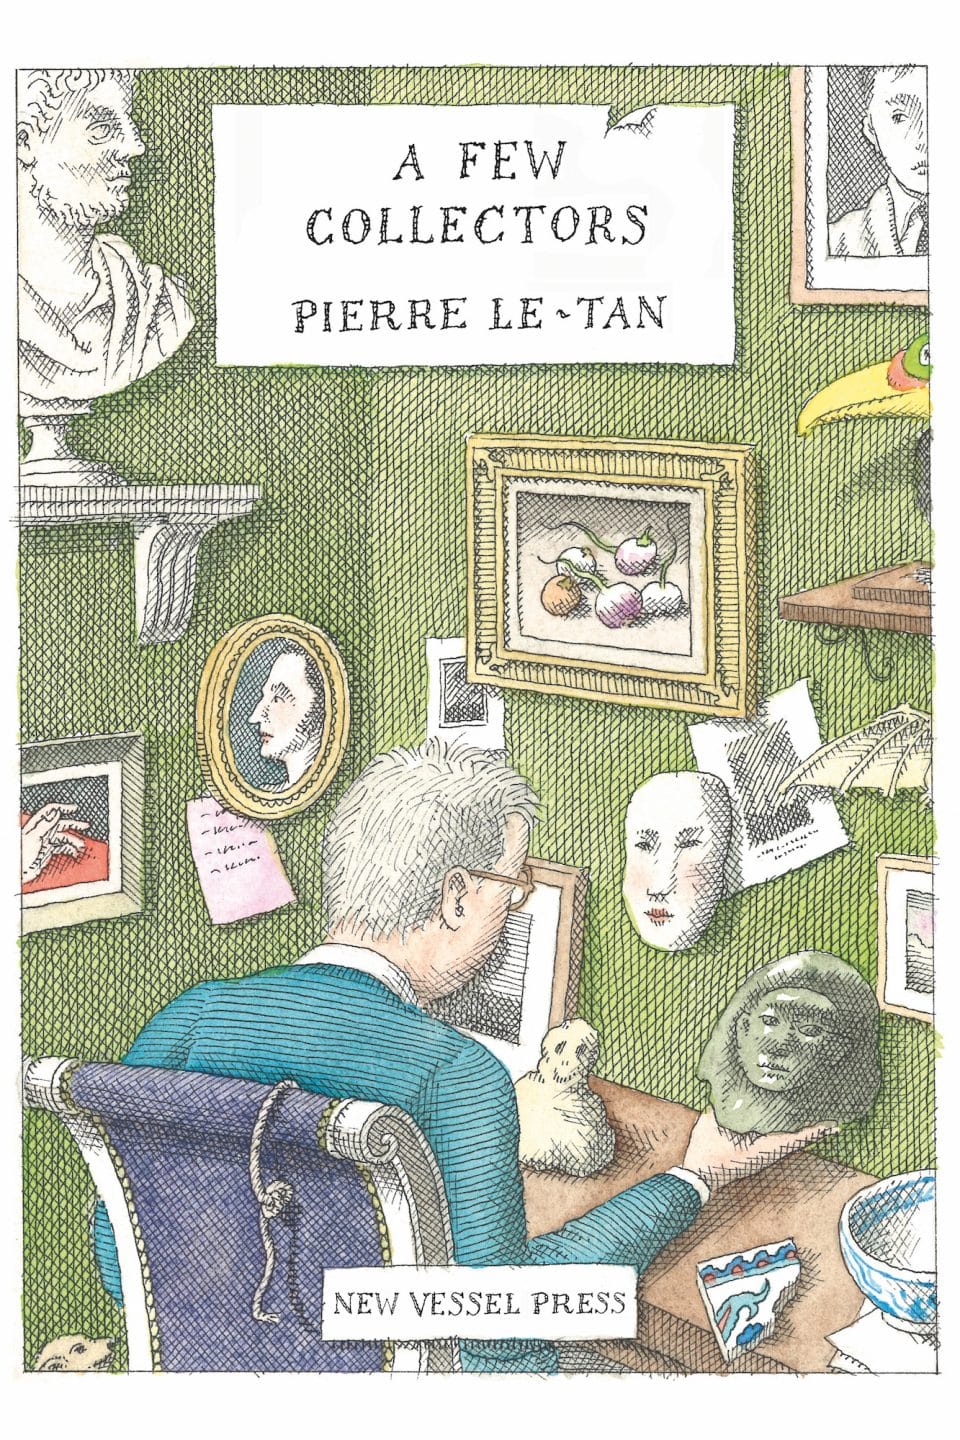 Pierre Le-Tans aufschlussreiche Beobachtungen in Bezug auf exzentrische Sammler*innen sind in einem neuen Buch zusammengefasst